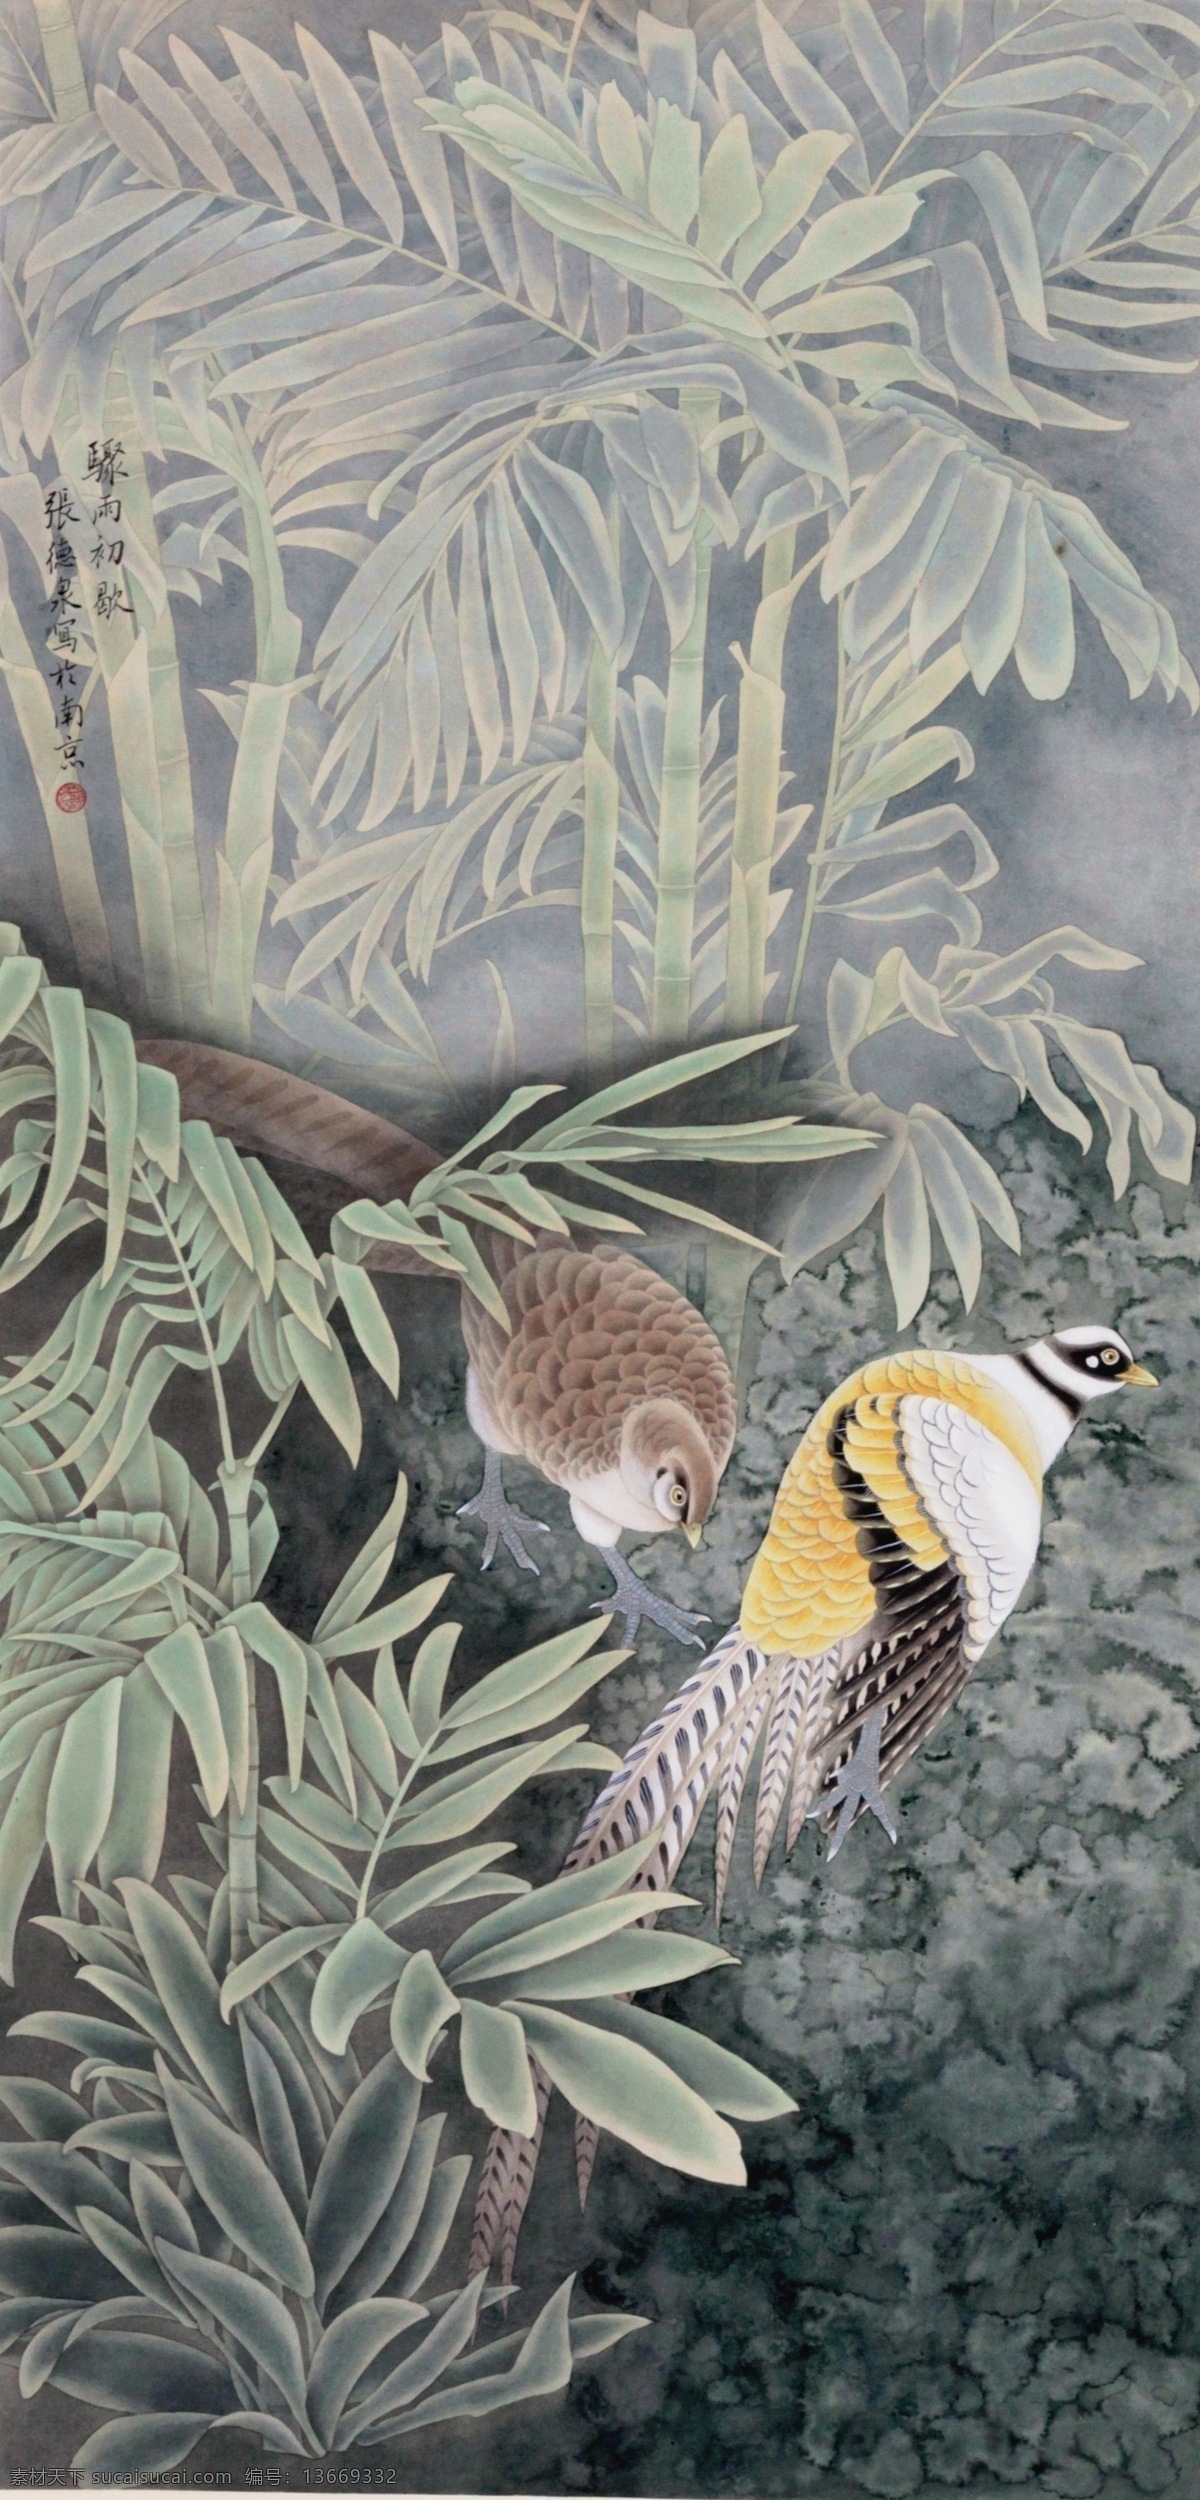 热带雨林 锦鸡 国画 工笔画 花鸟画 书画 绘画 张德泉 绘画书法 文化艺术